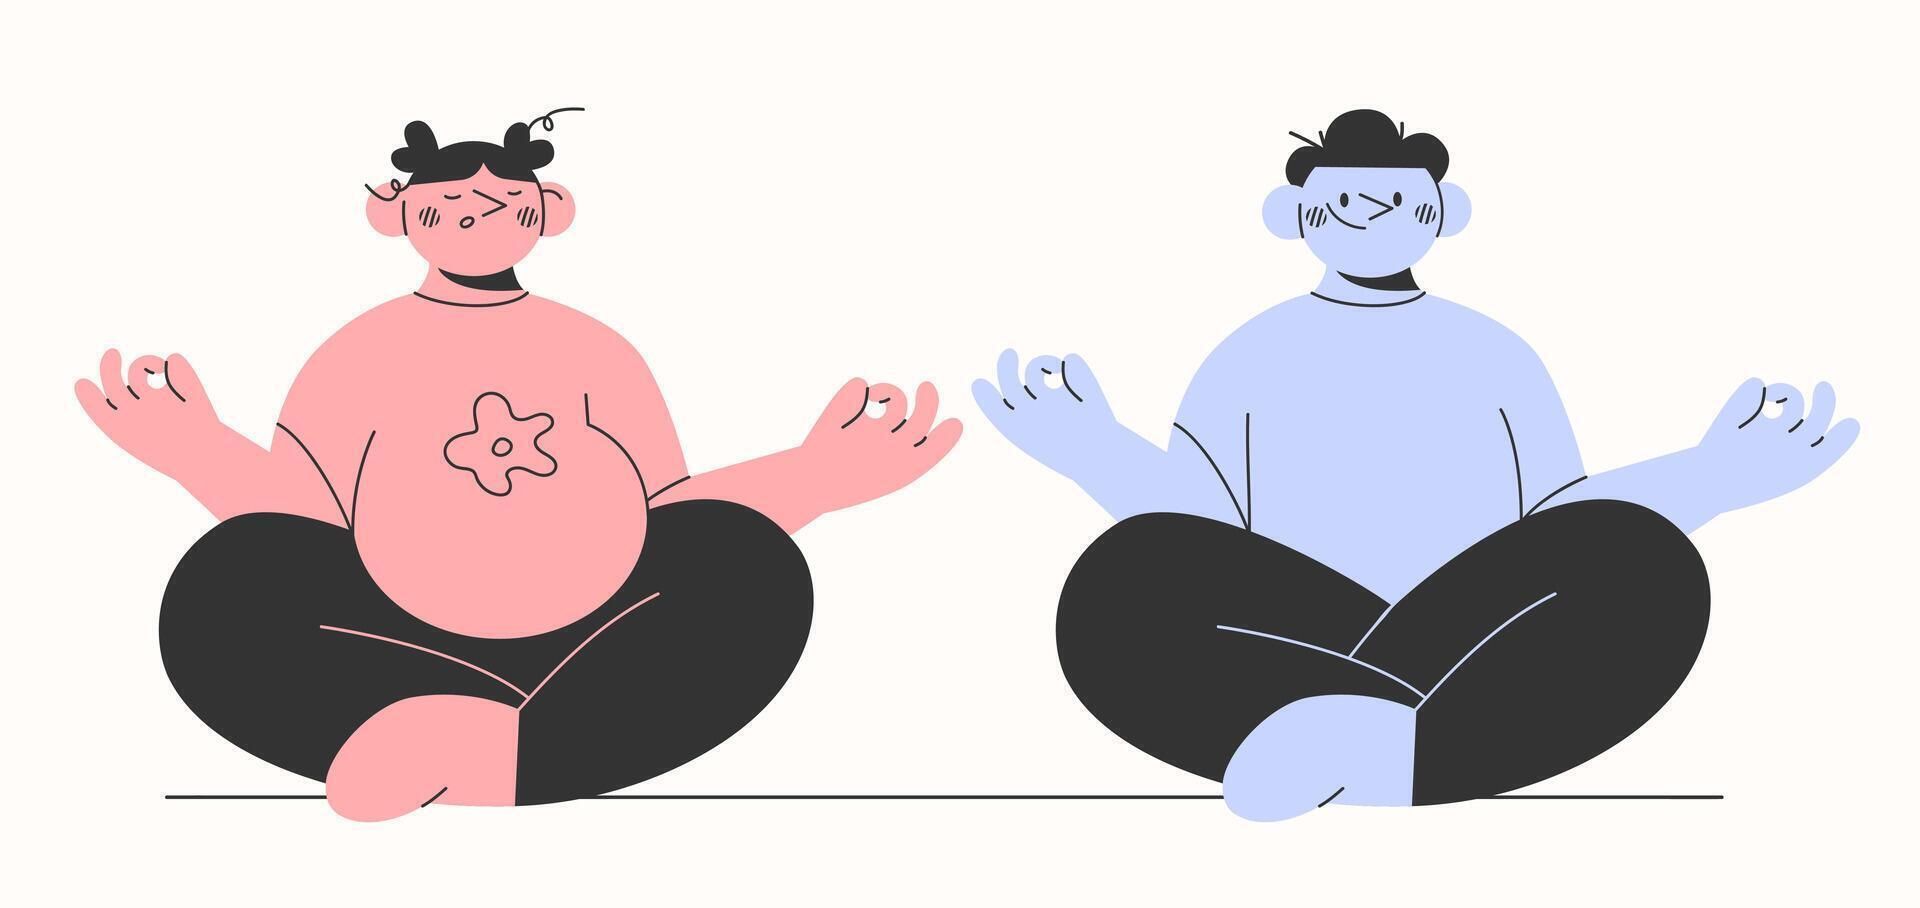 joven padres, familia haciendo prenatal concepto.de.yoga el embarazo, familia, maternidad, paternidad yoga. mano dibujado dibujos animados estilo personajes.vector ilustración eps 10 vector